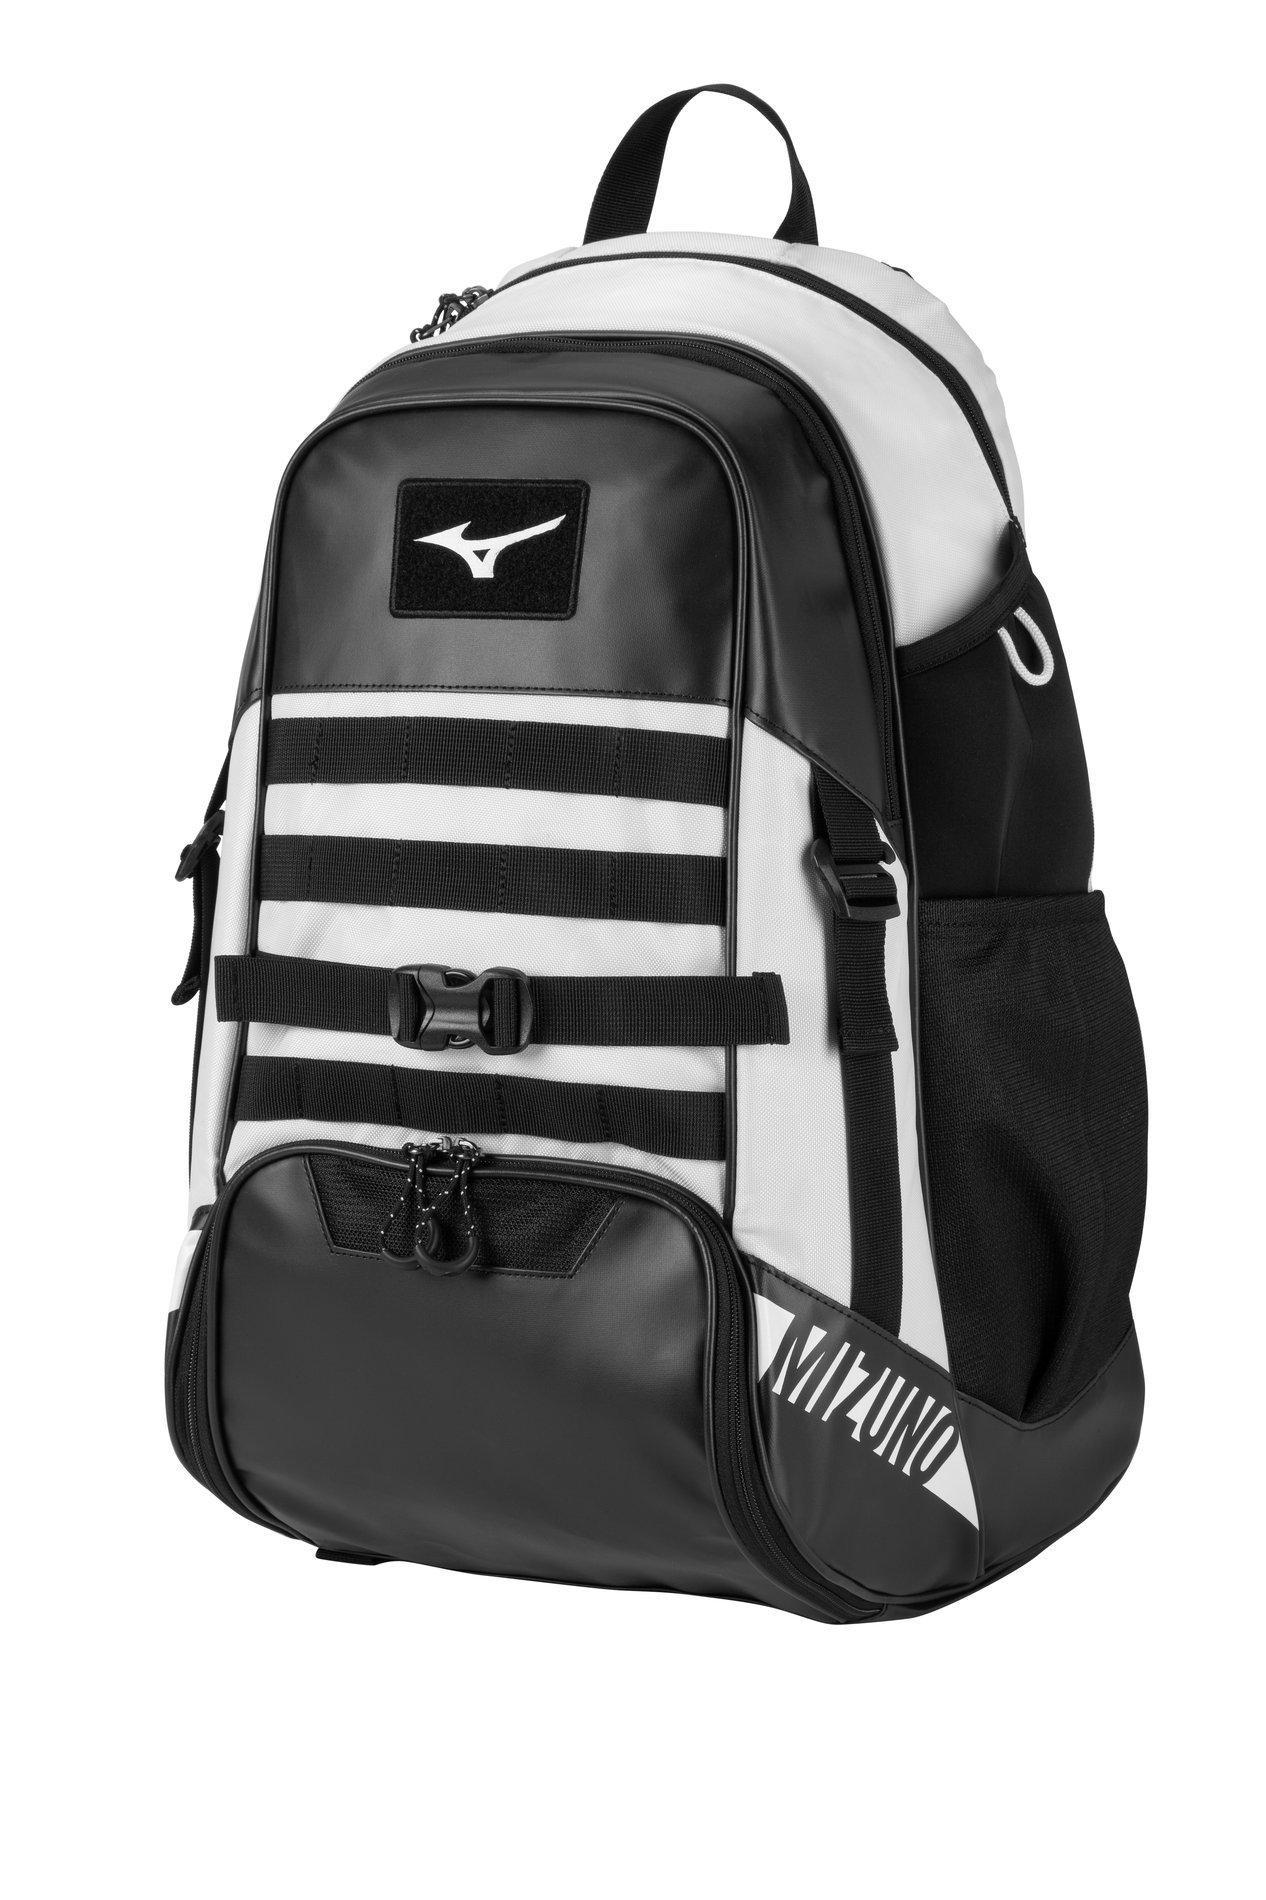 MVP Backpack X, Baseball Gear Backpack 